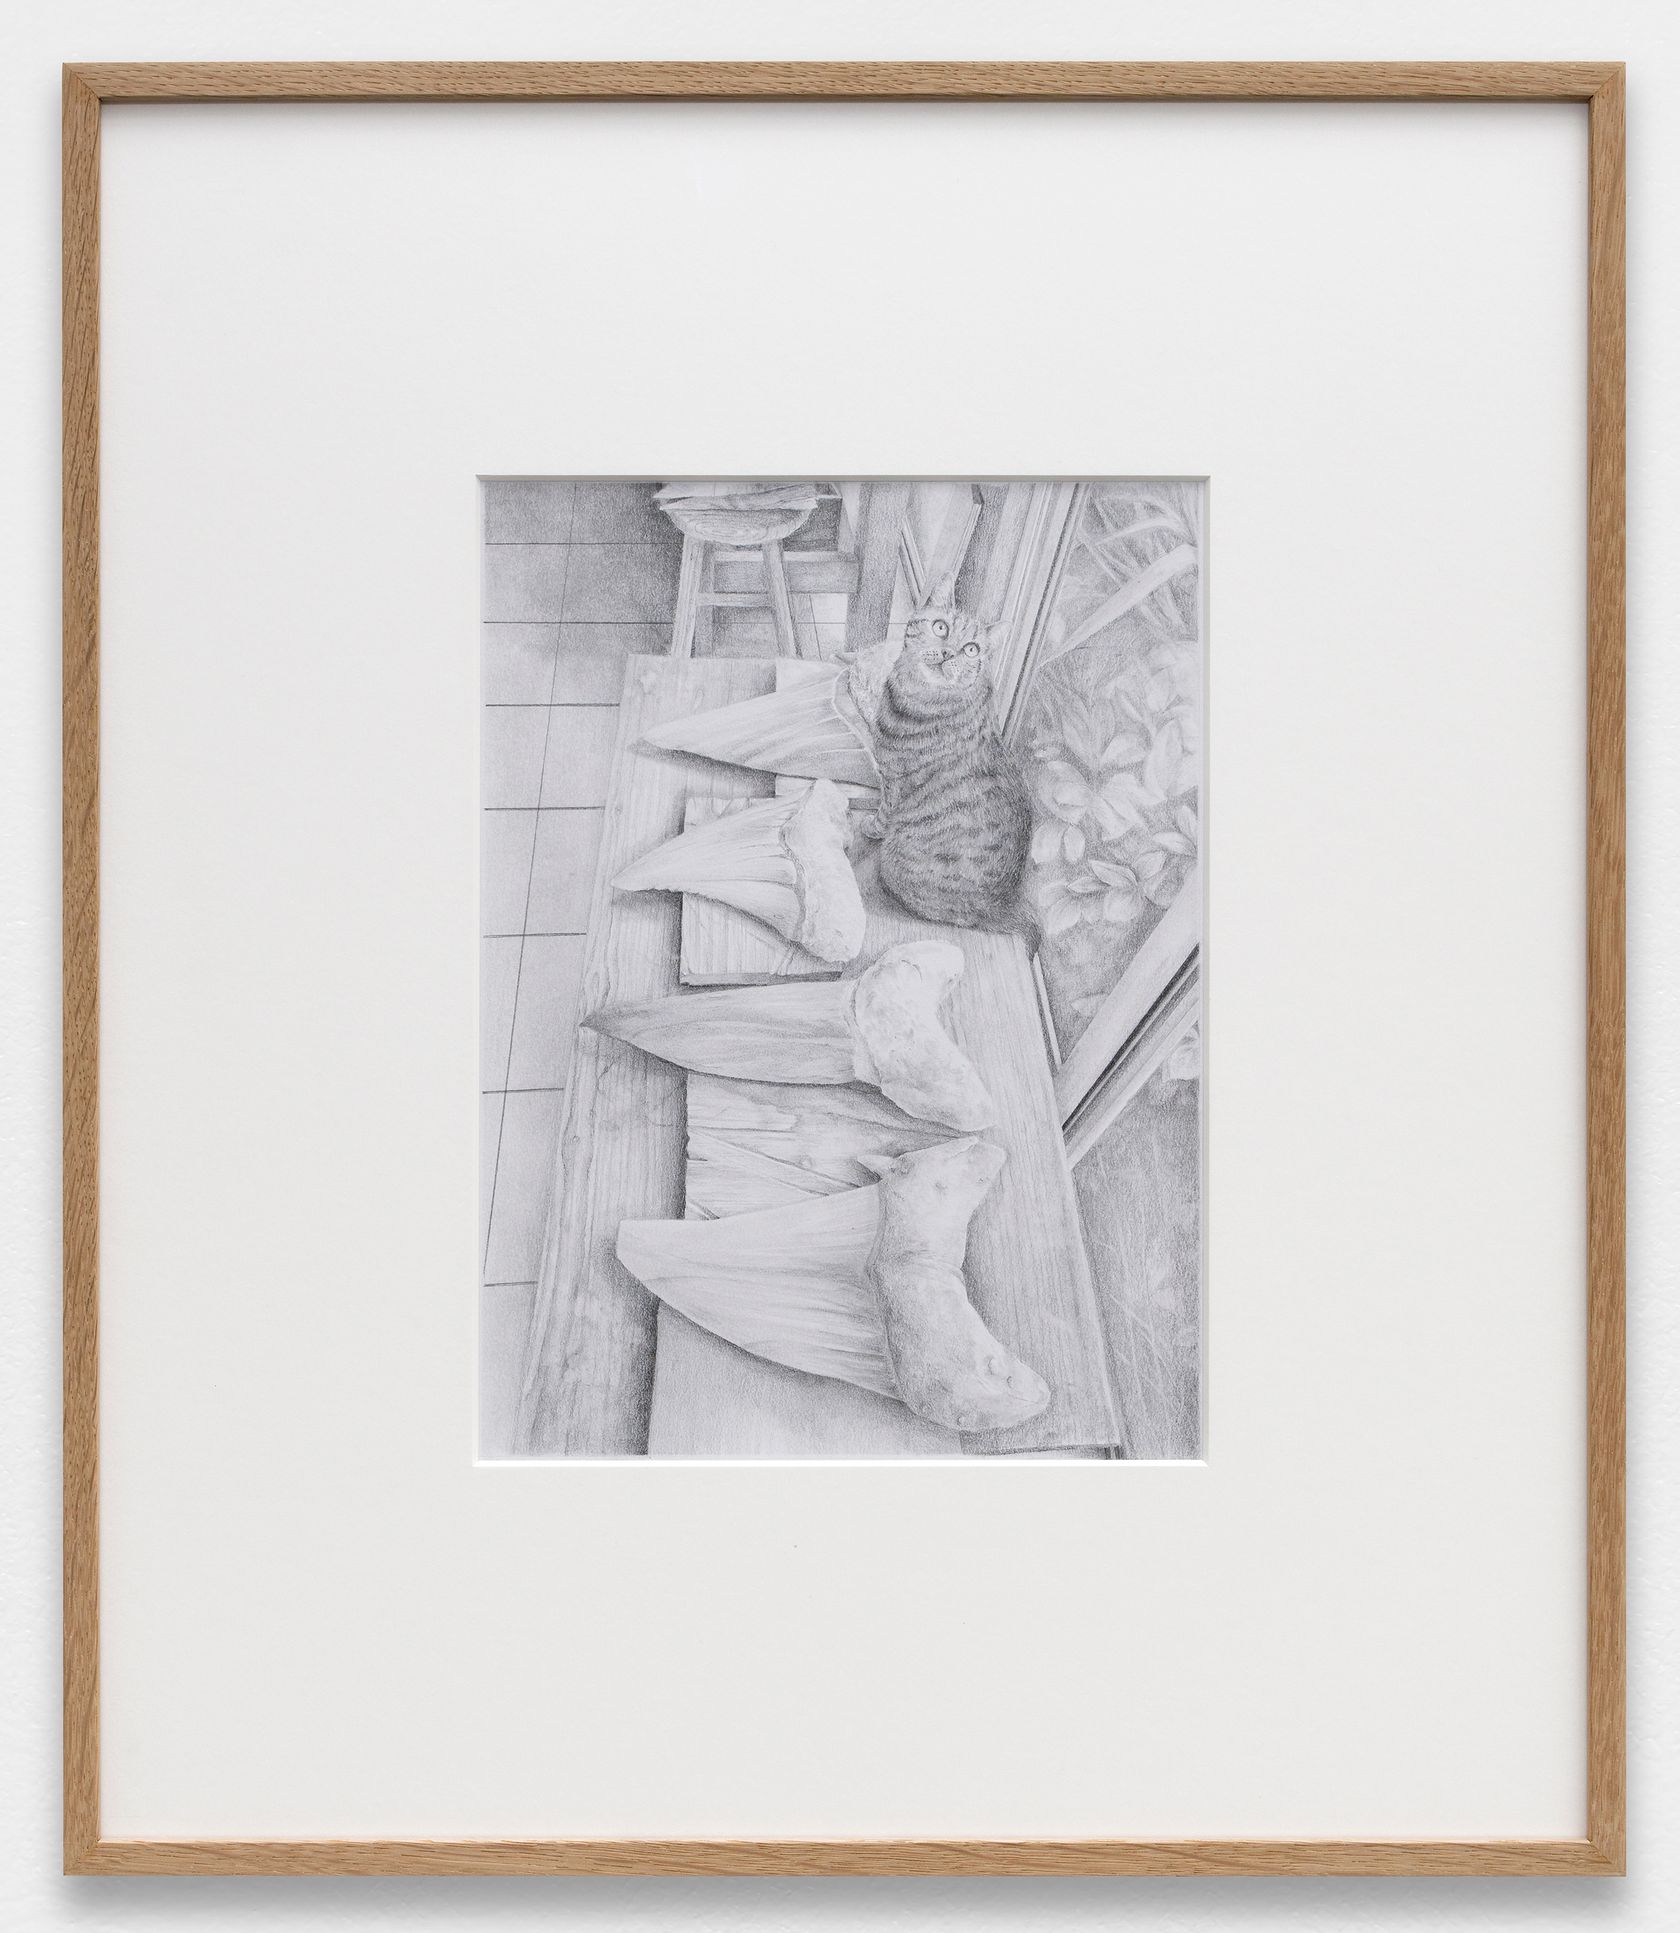 Laurent Le Deunff, Grelot, 2020 Crayon sur papier27 × 20 cm / 10 5/8 × 7 7/8 in. | 49 × 42 × 2.5 cm / 19 2/8 × 16 1/2 × 1  in. (encadré/framed)